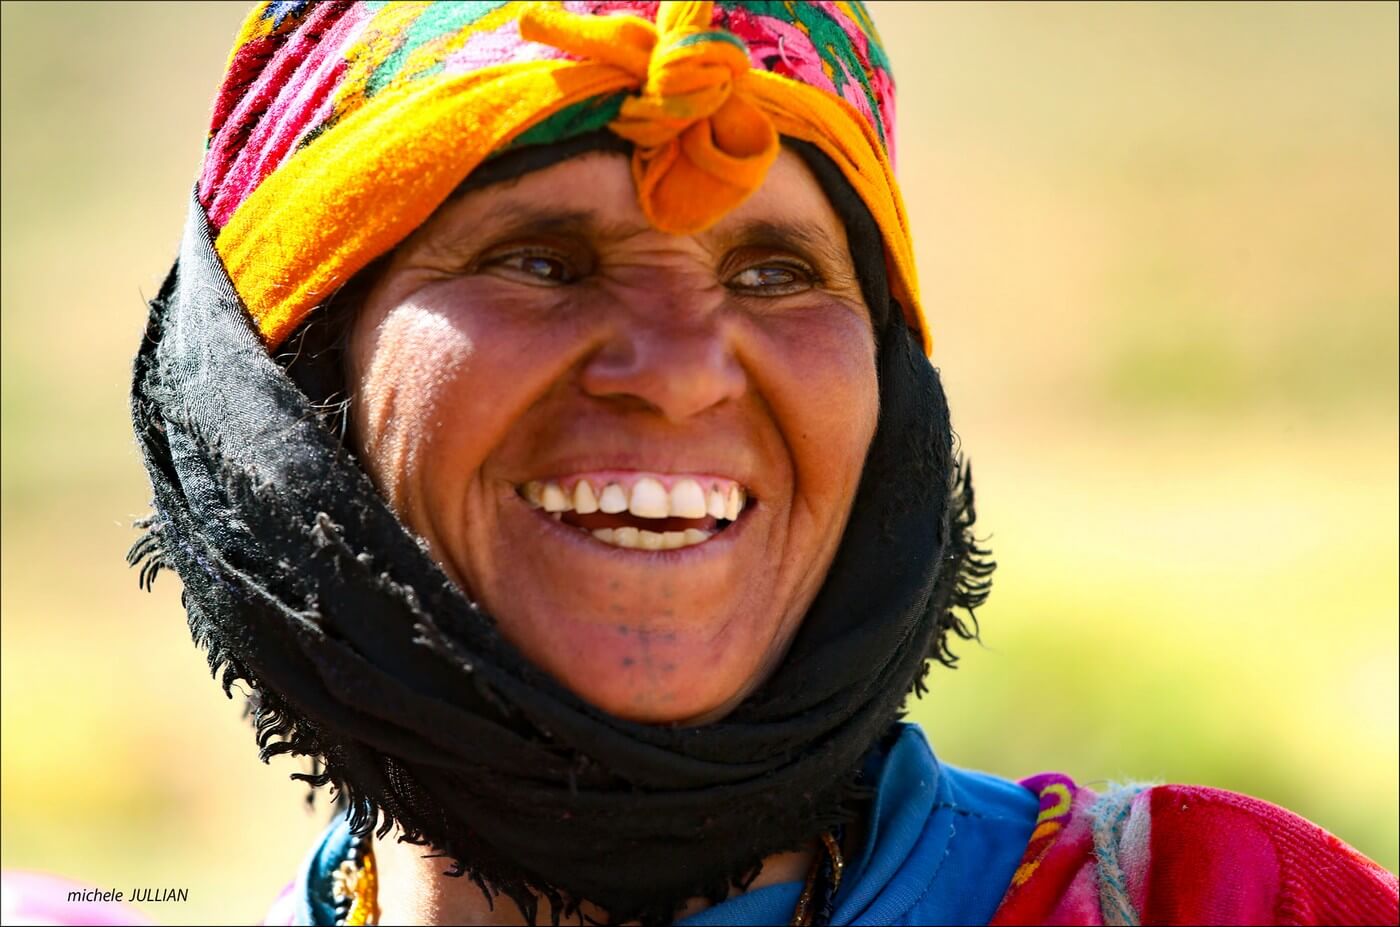 sourire d'une femme berbere au maroc